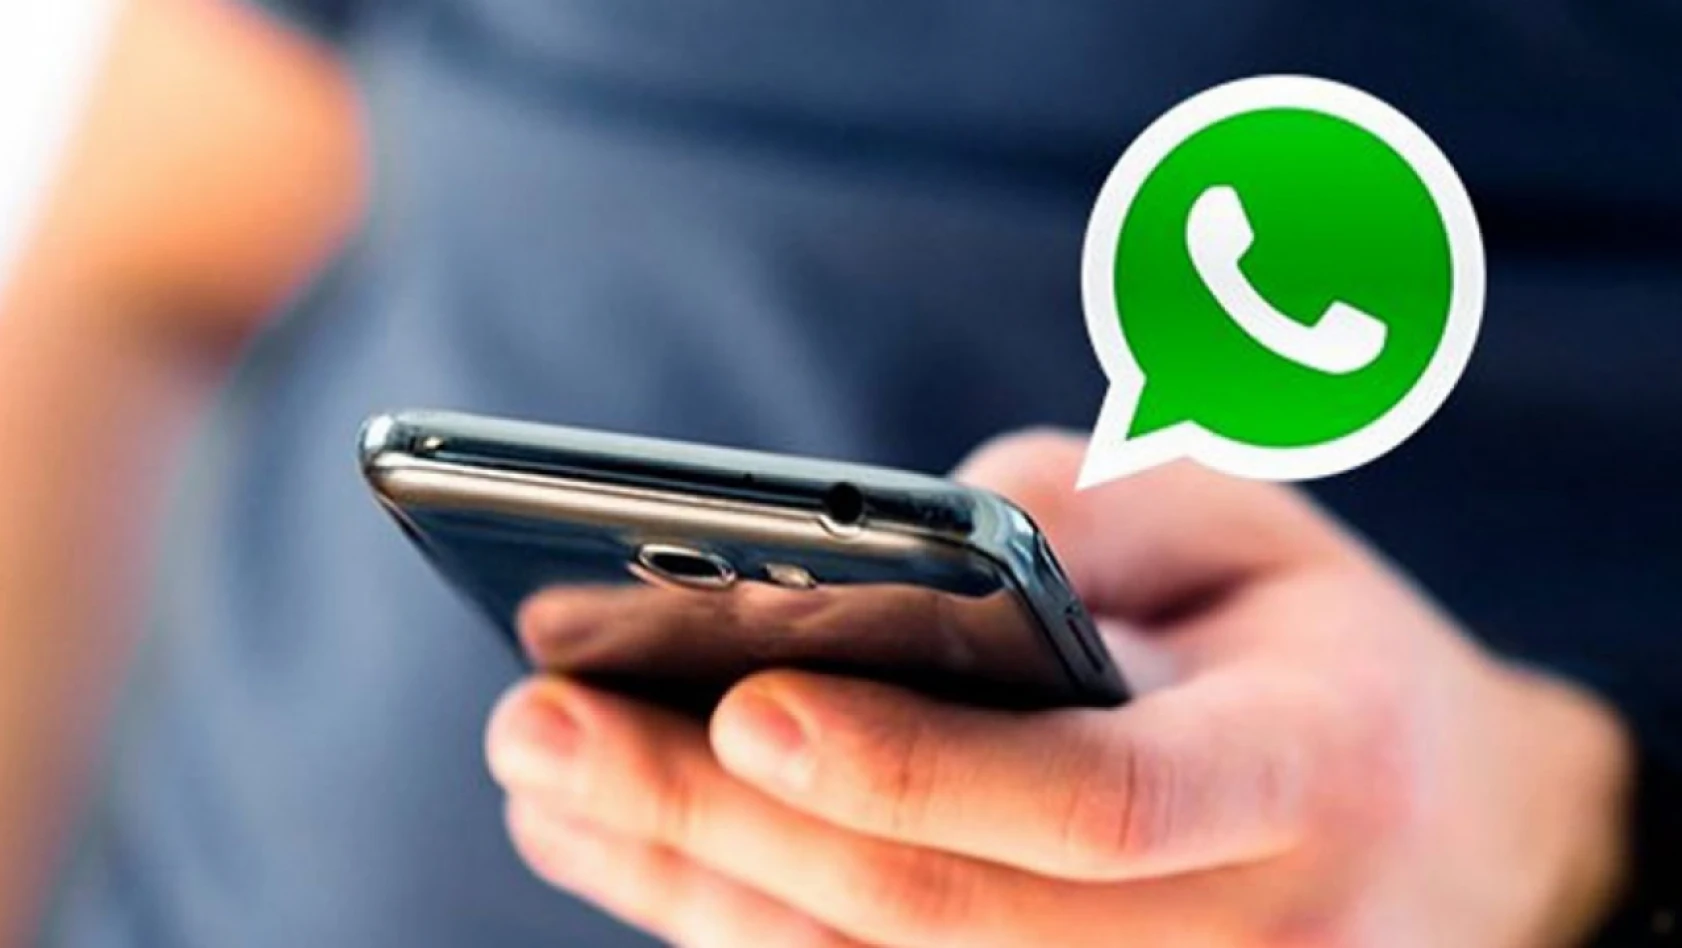 Klon uygulama kullanımına son! WhatsApp'ta tek cihaz iki hesap dönemi!